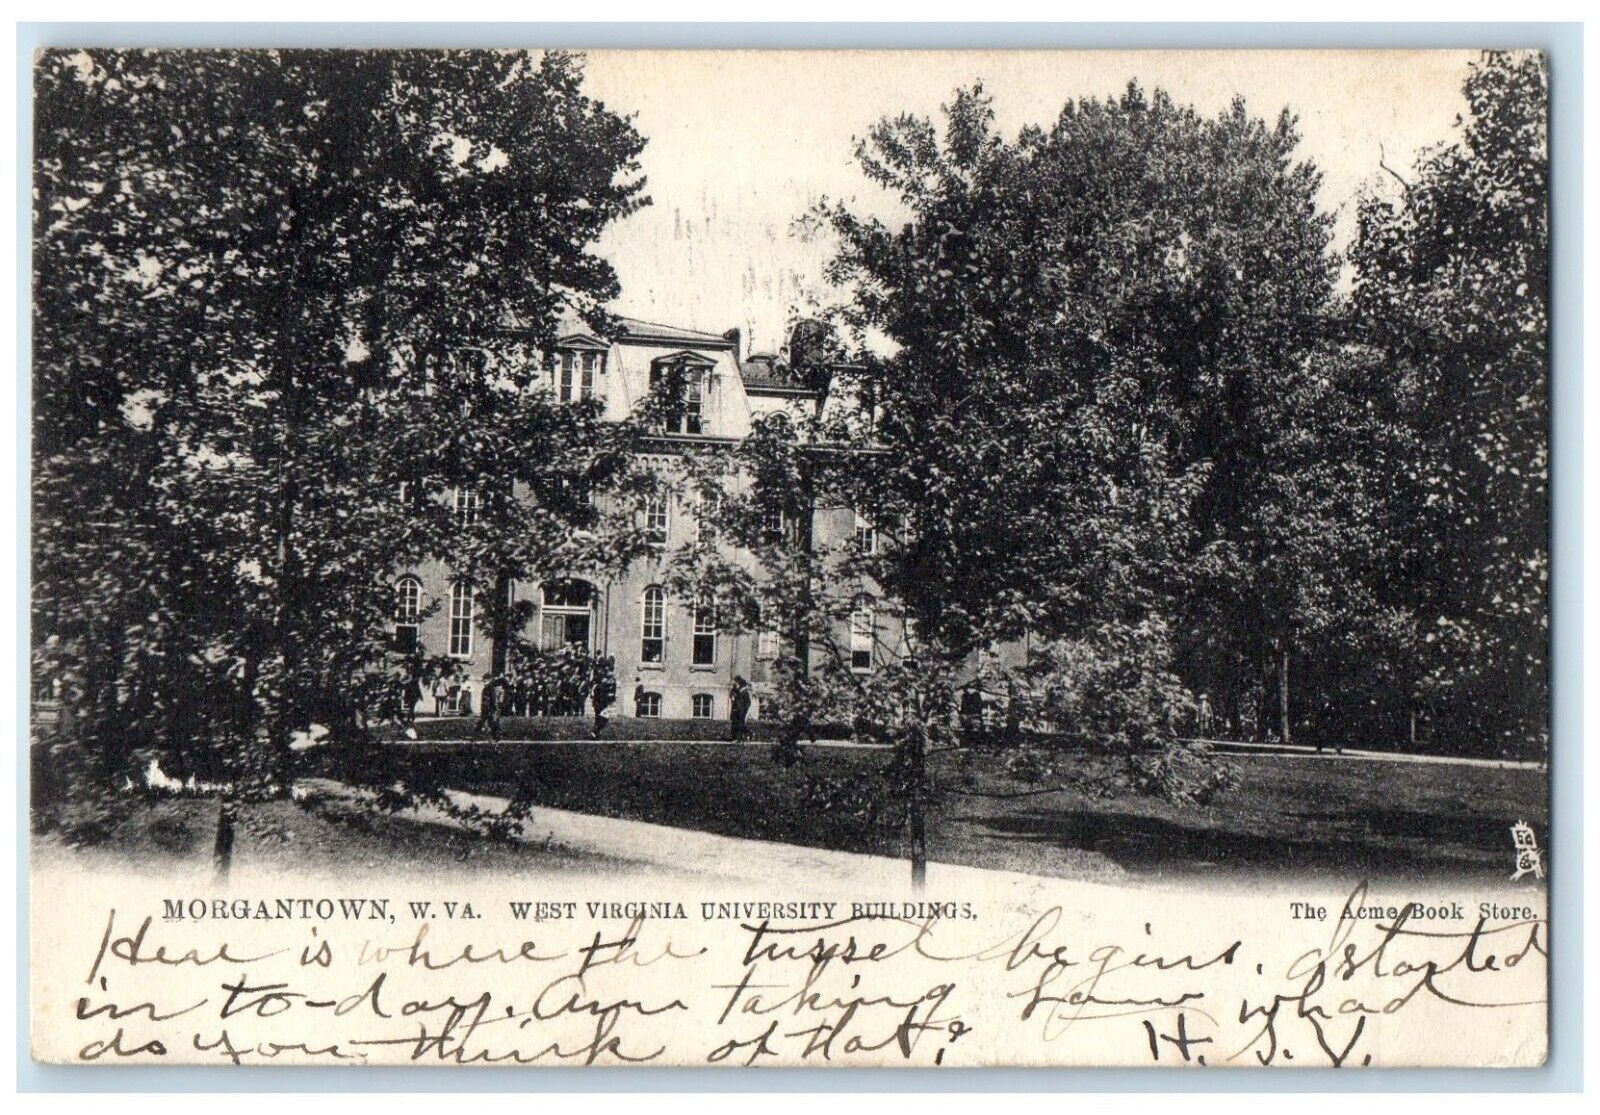 1907 West Virginia University Buildings Morgantown West Virginia Tuck Postcard